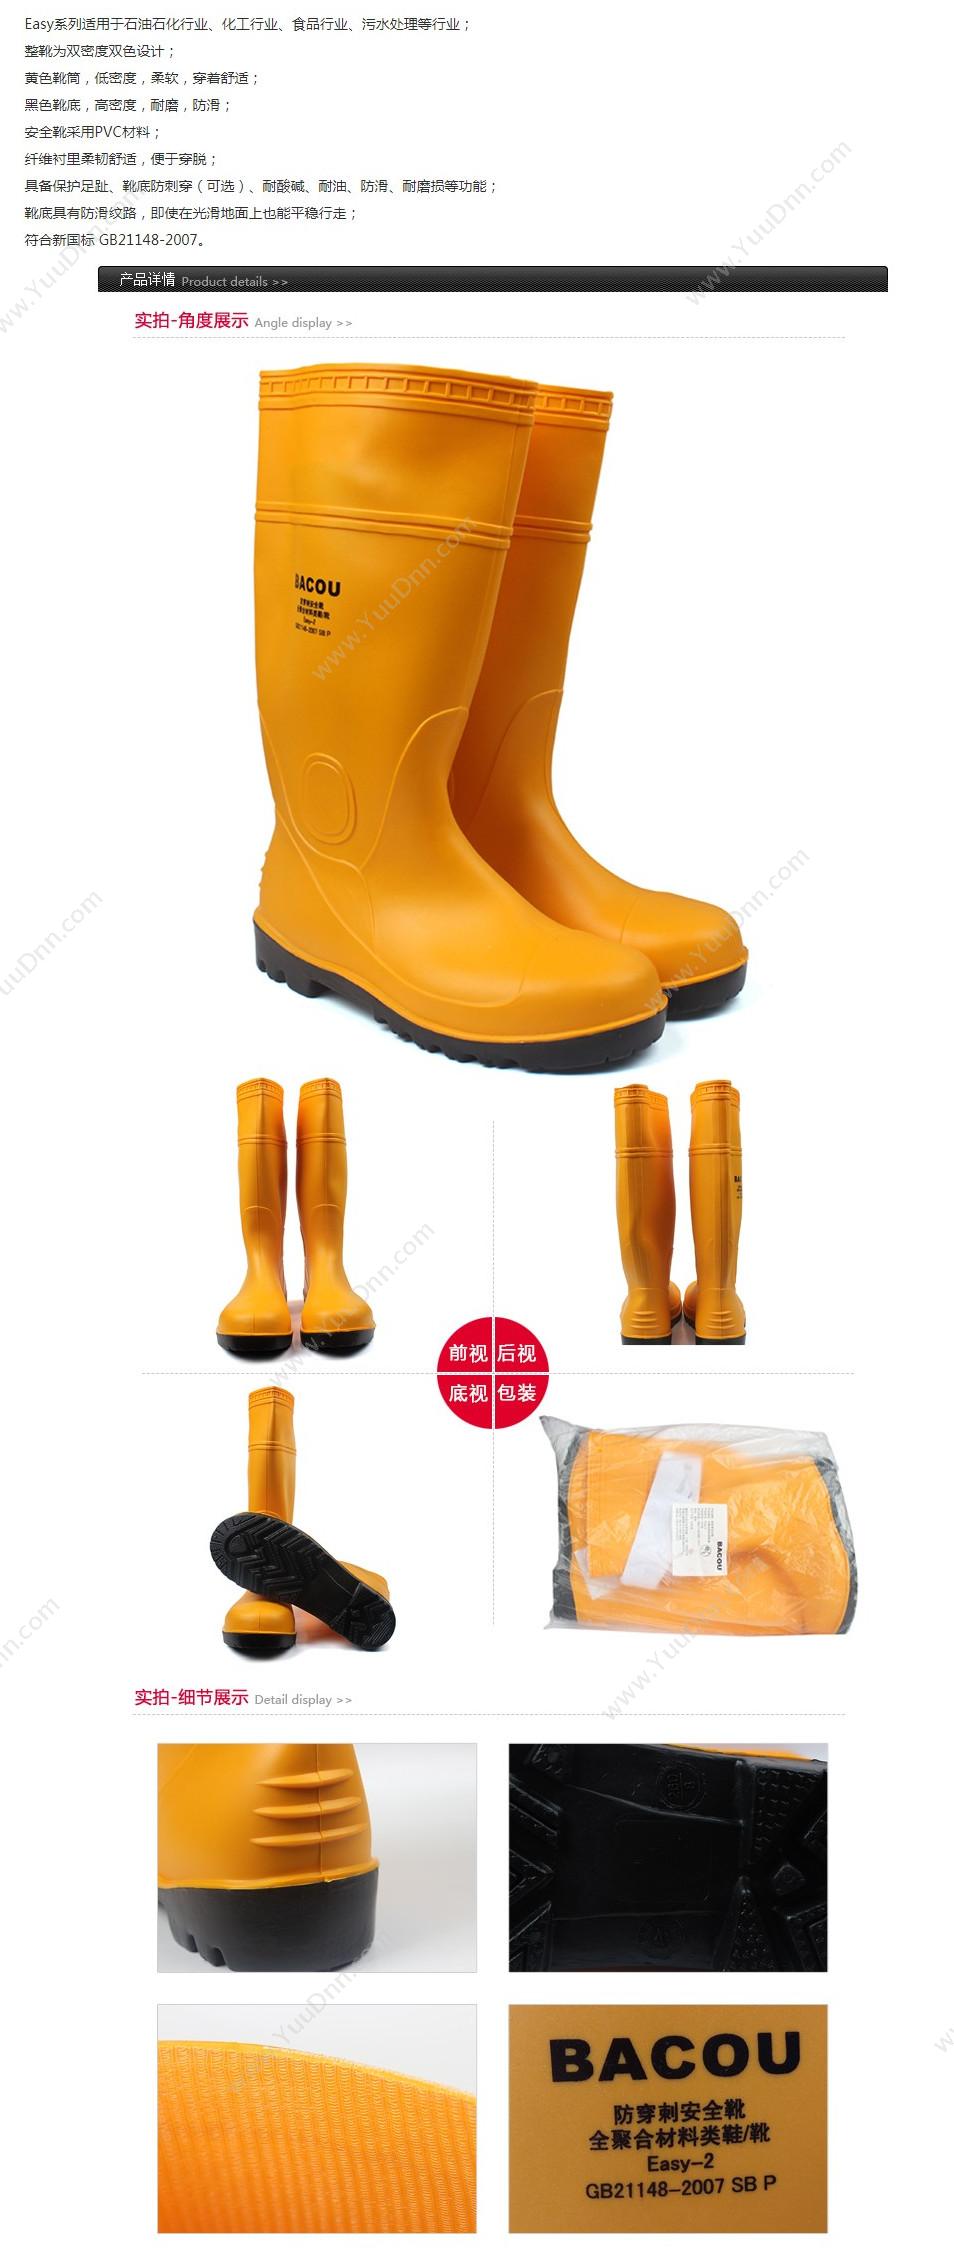 霍尼韦尔 Honeywell 75708 PVC 安全靴Easy 轻型 45 橘黄色 10双/箱 轻便鞋安全靴